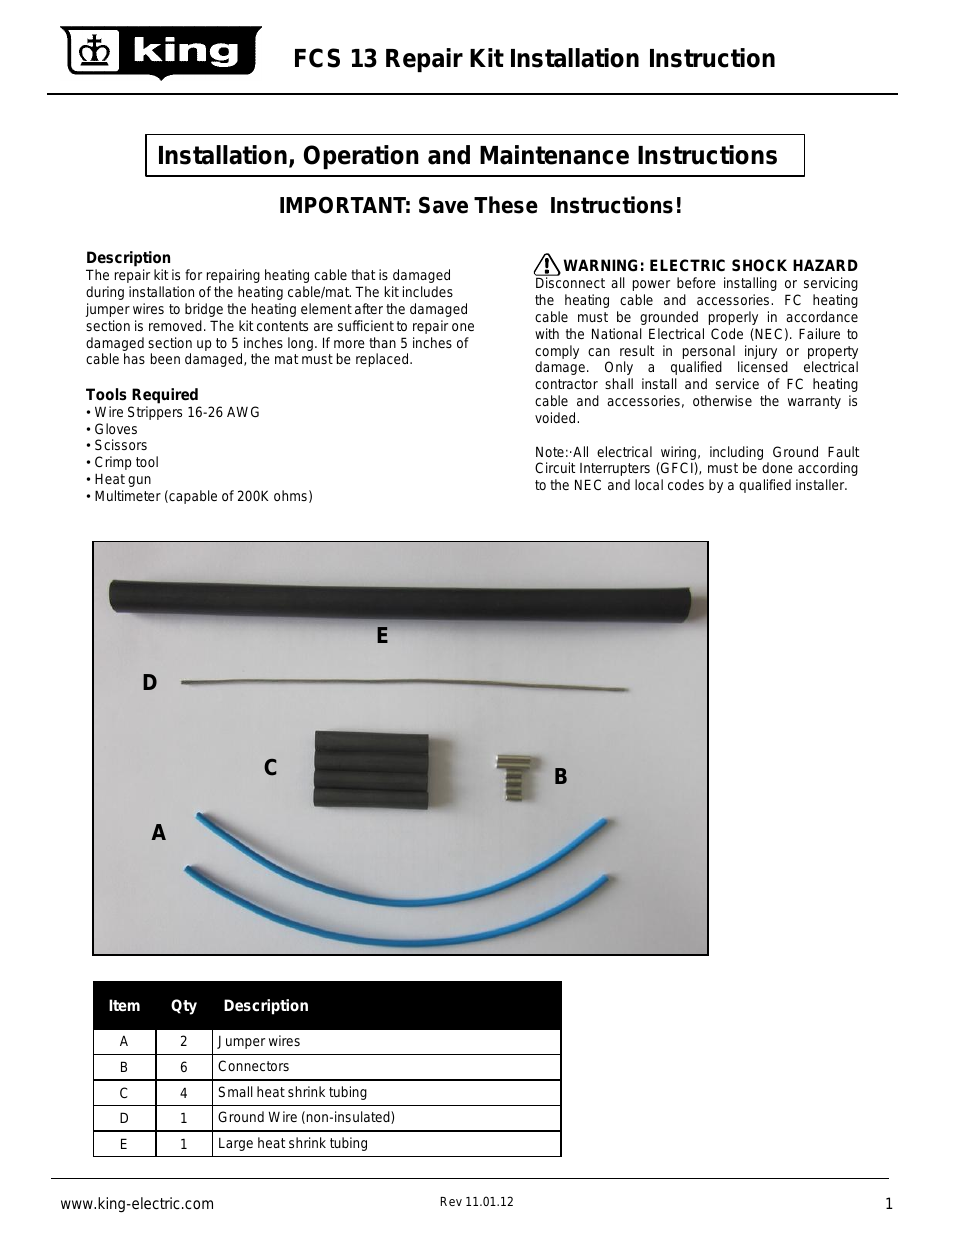 FCS13 heating cable repair kit